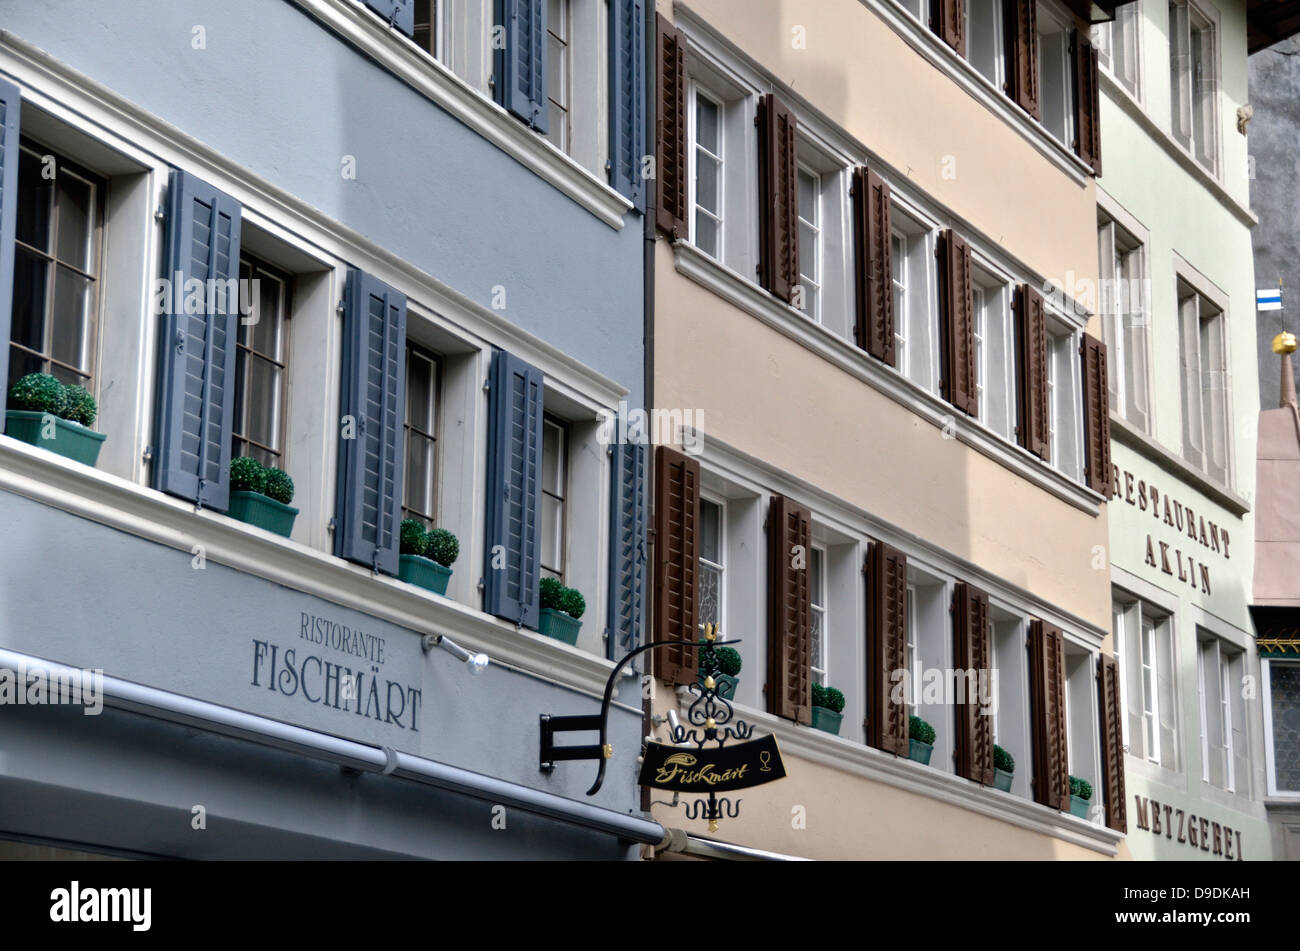 Restaurant facades, Zug, Switzerland. Stock Photo